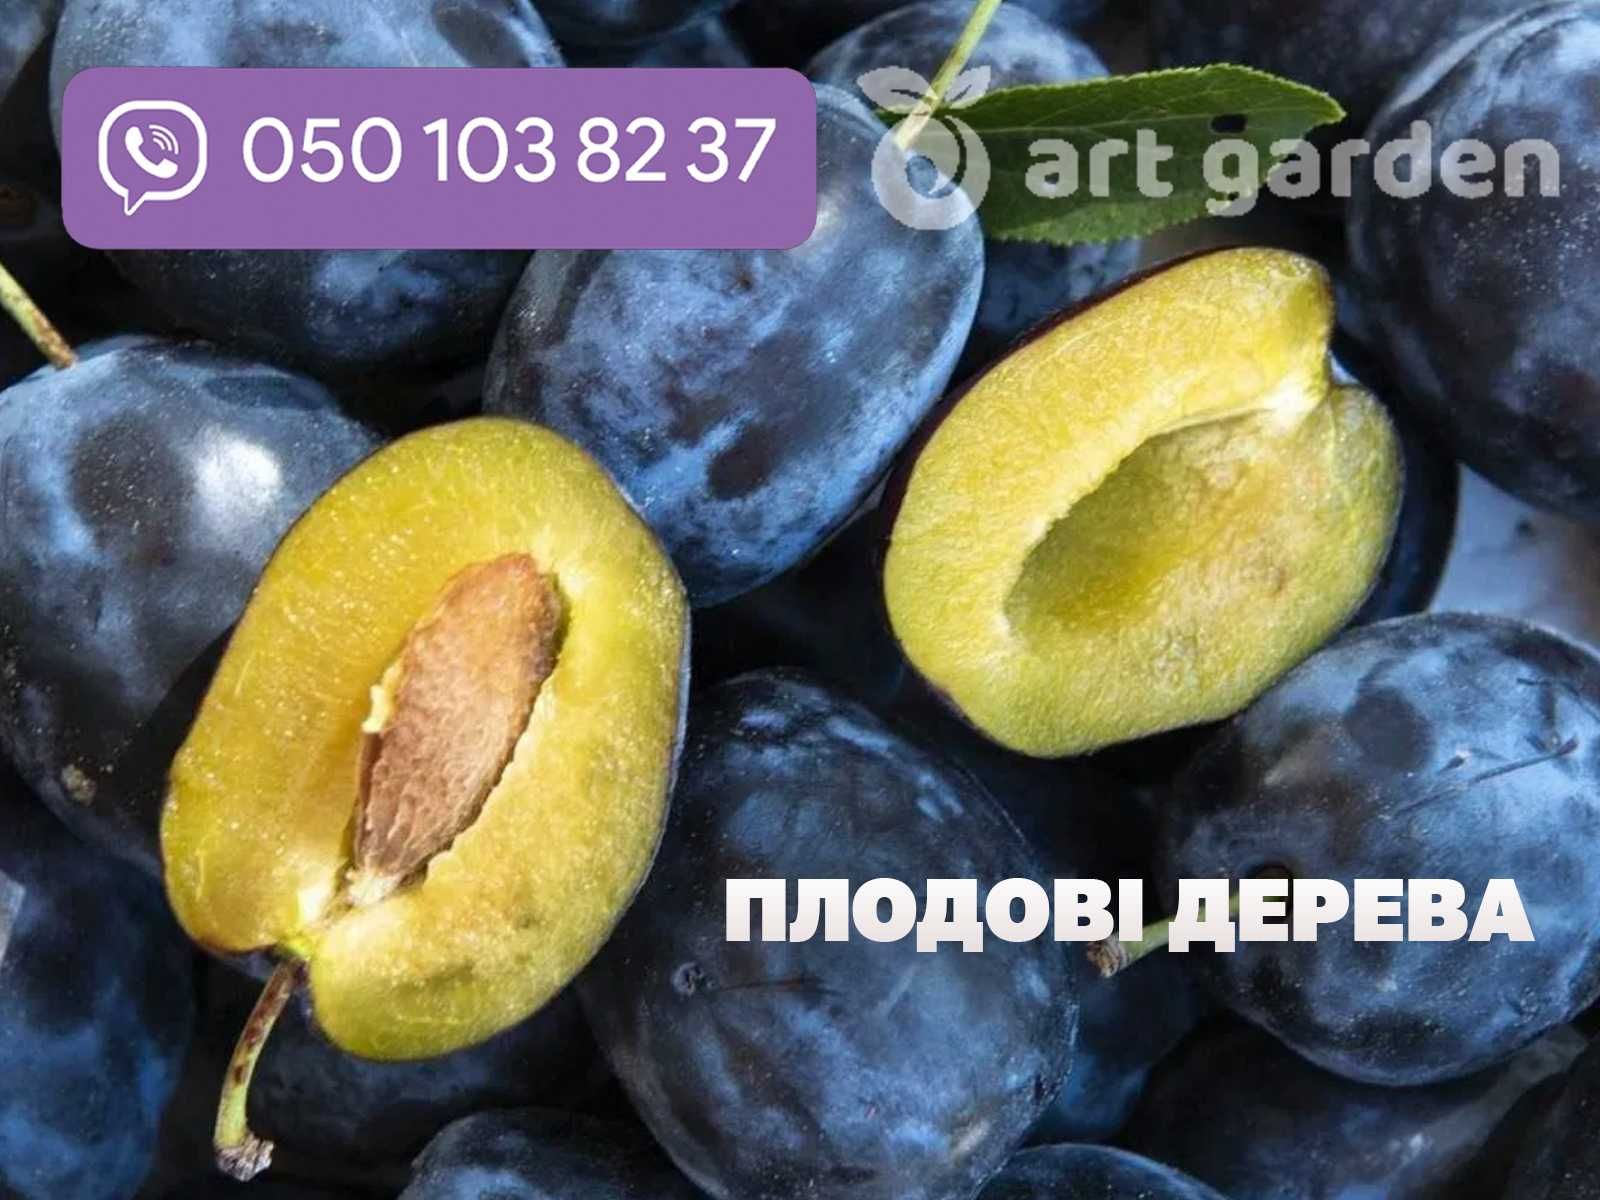 Замовлення саджанців плодових дерев за доступною ціною